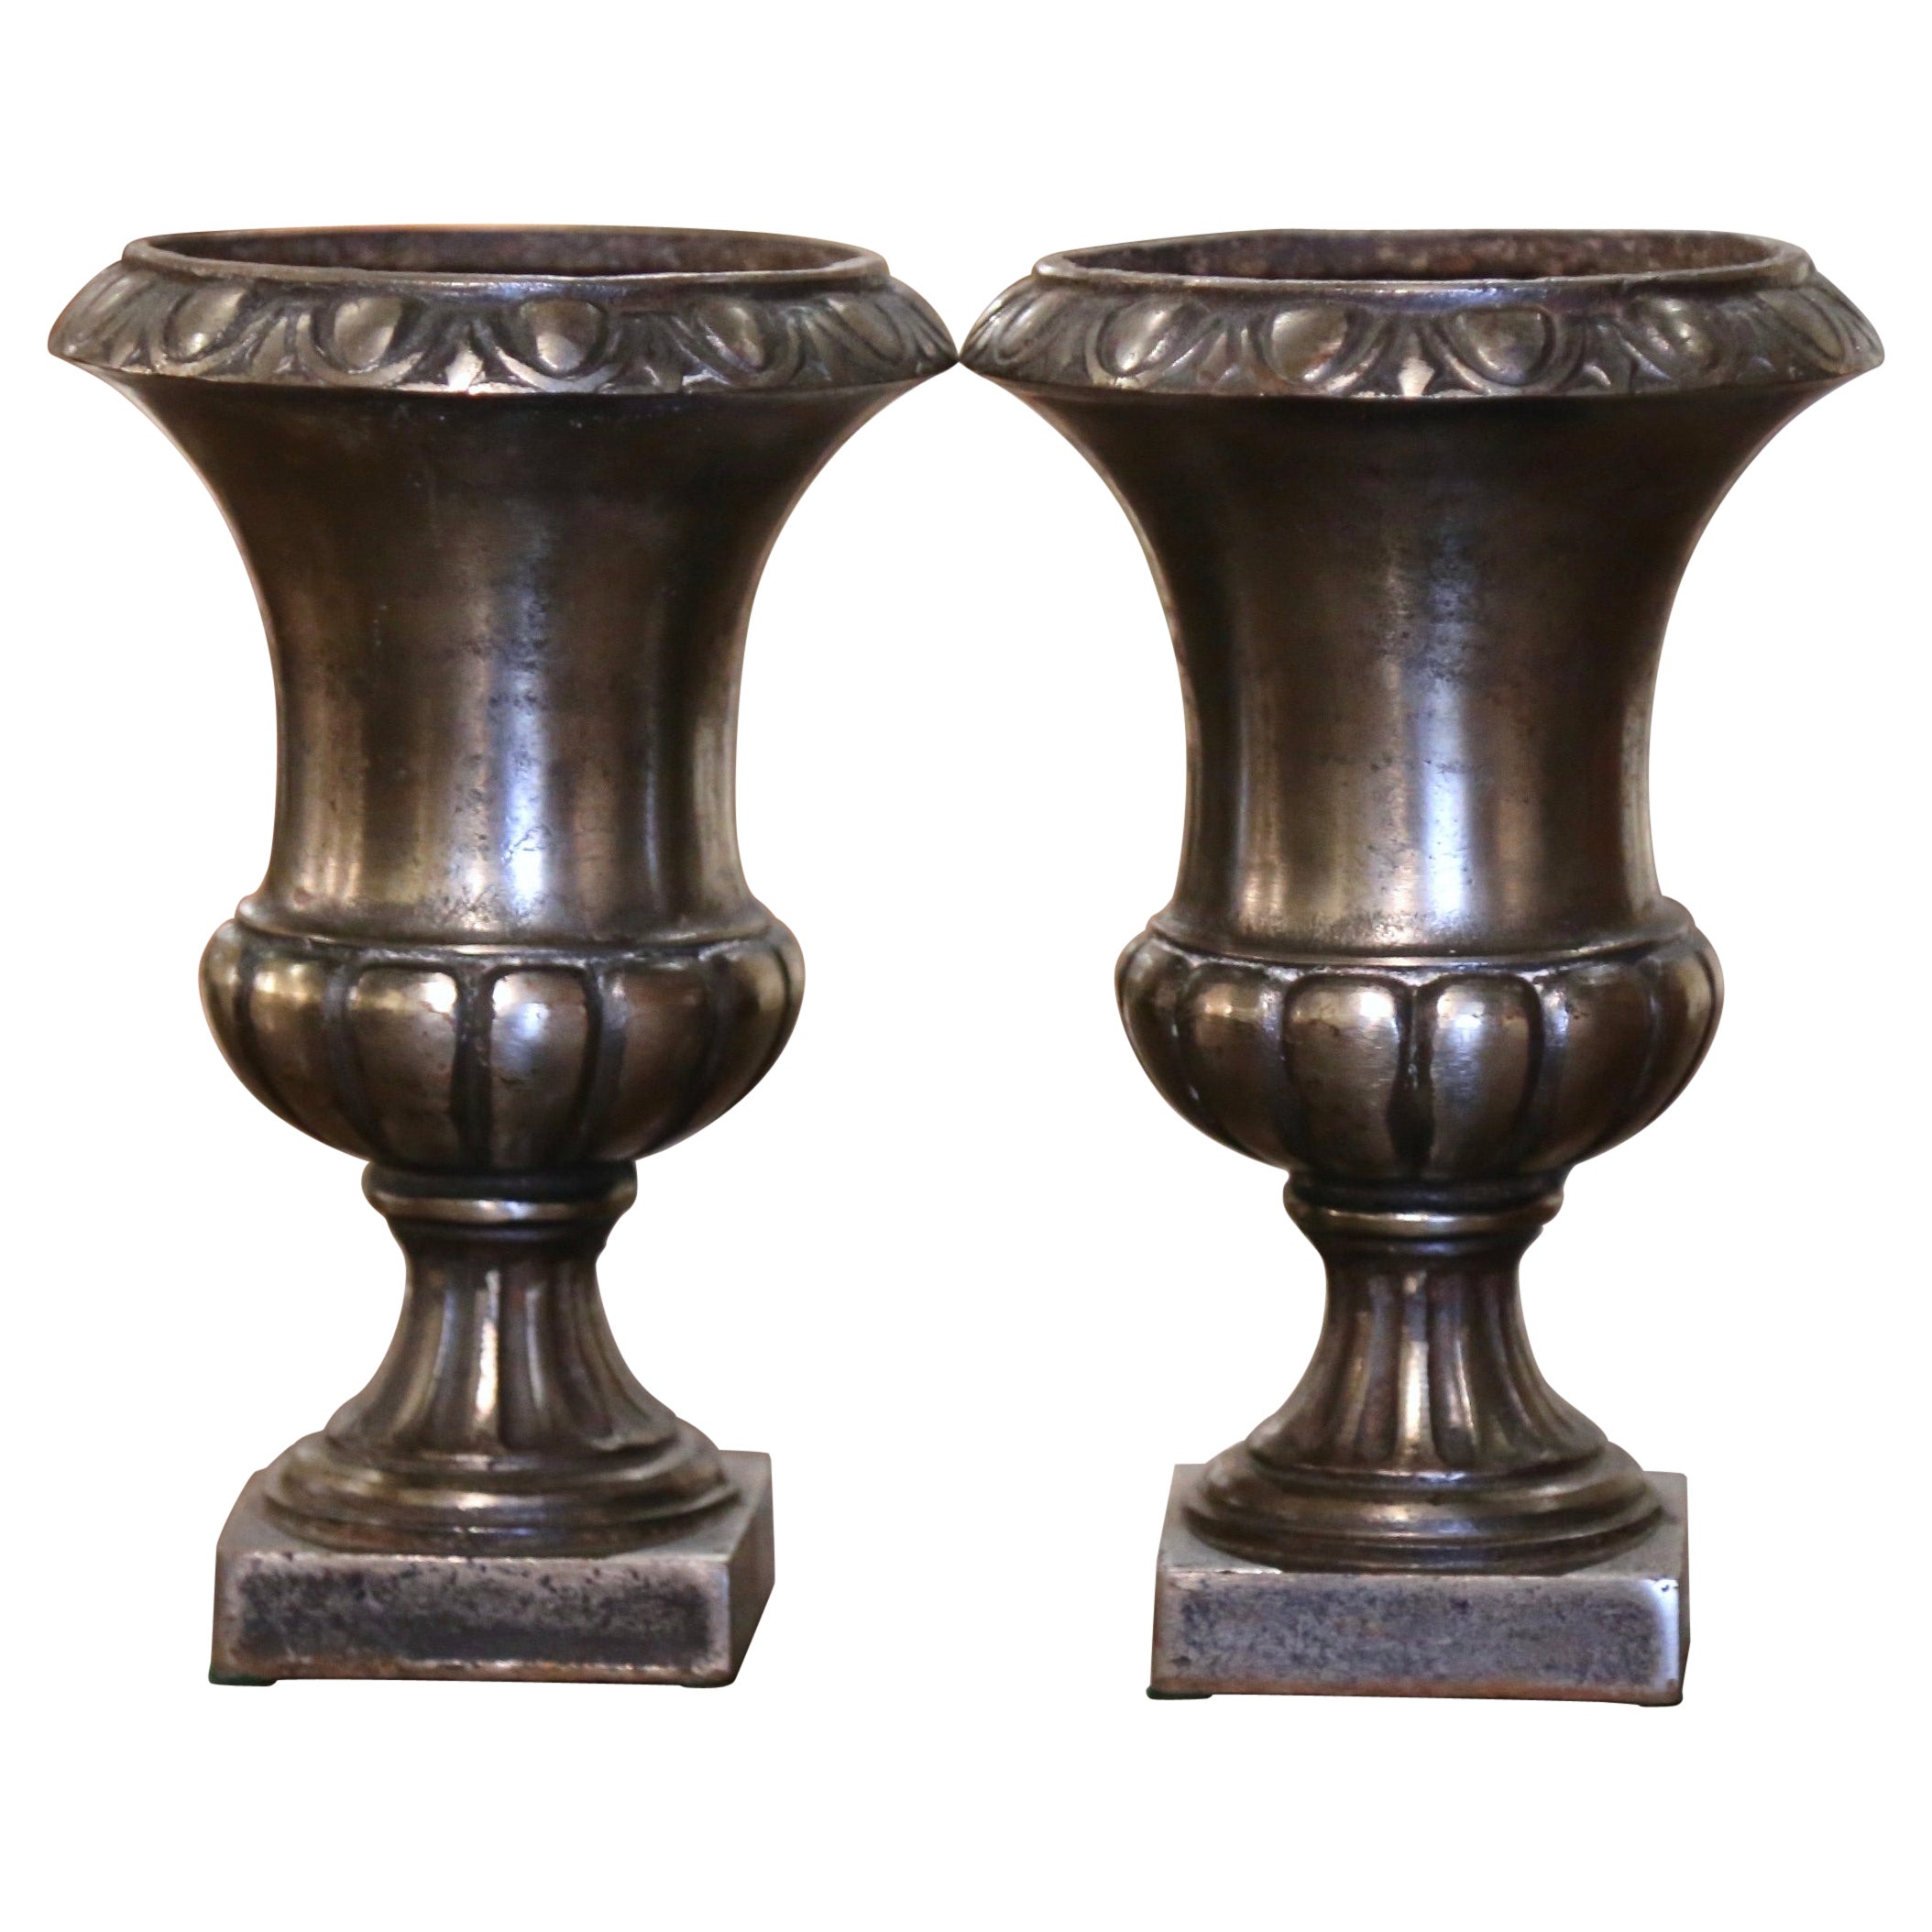 Paar französische neoklassizistische Urnen aus poliertem Eisen in Campana-Form aus dem 19. Jahrhundert